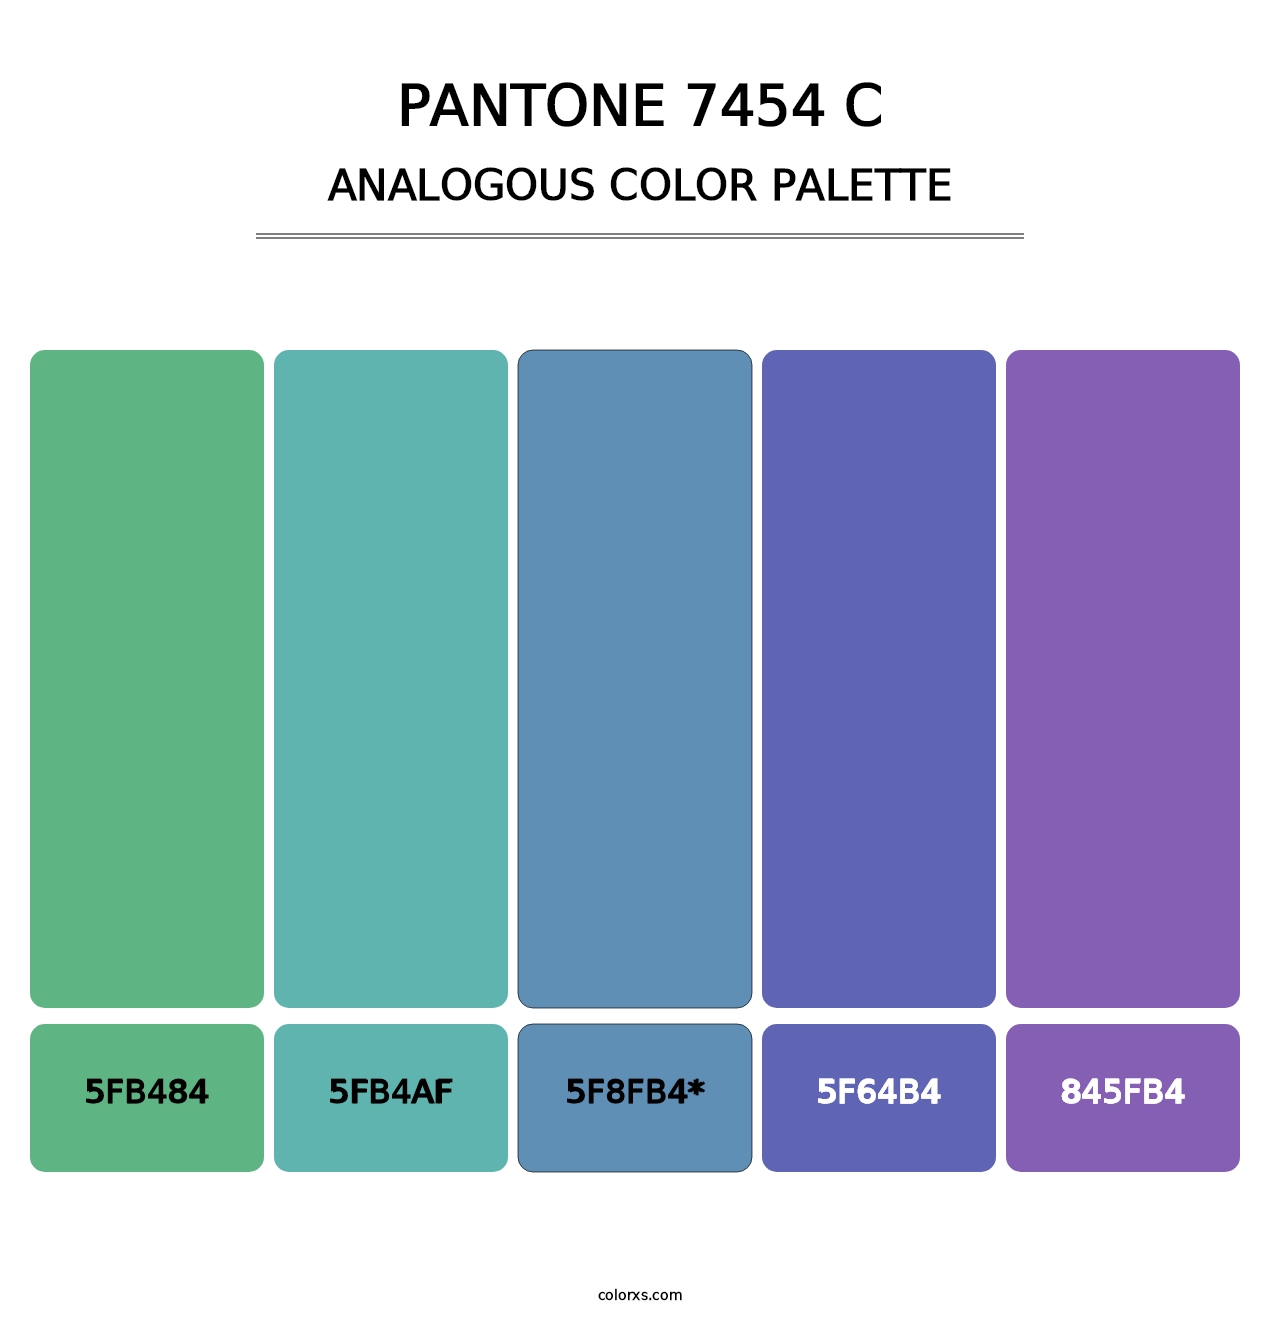 PANTONE 7454 C - Analogous Color Palette